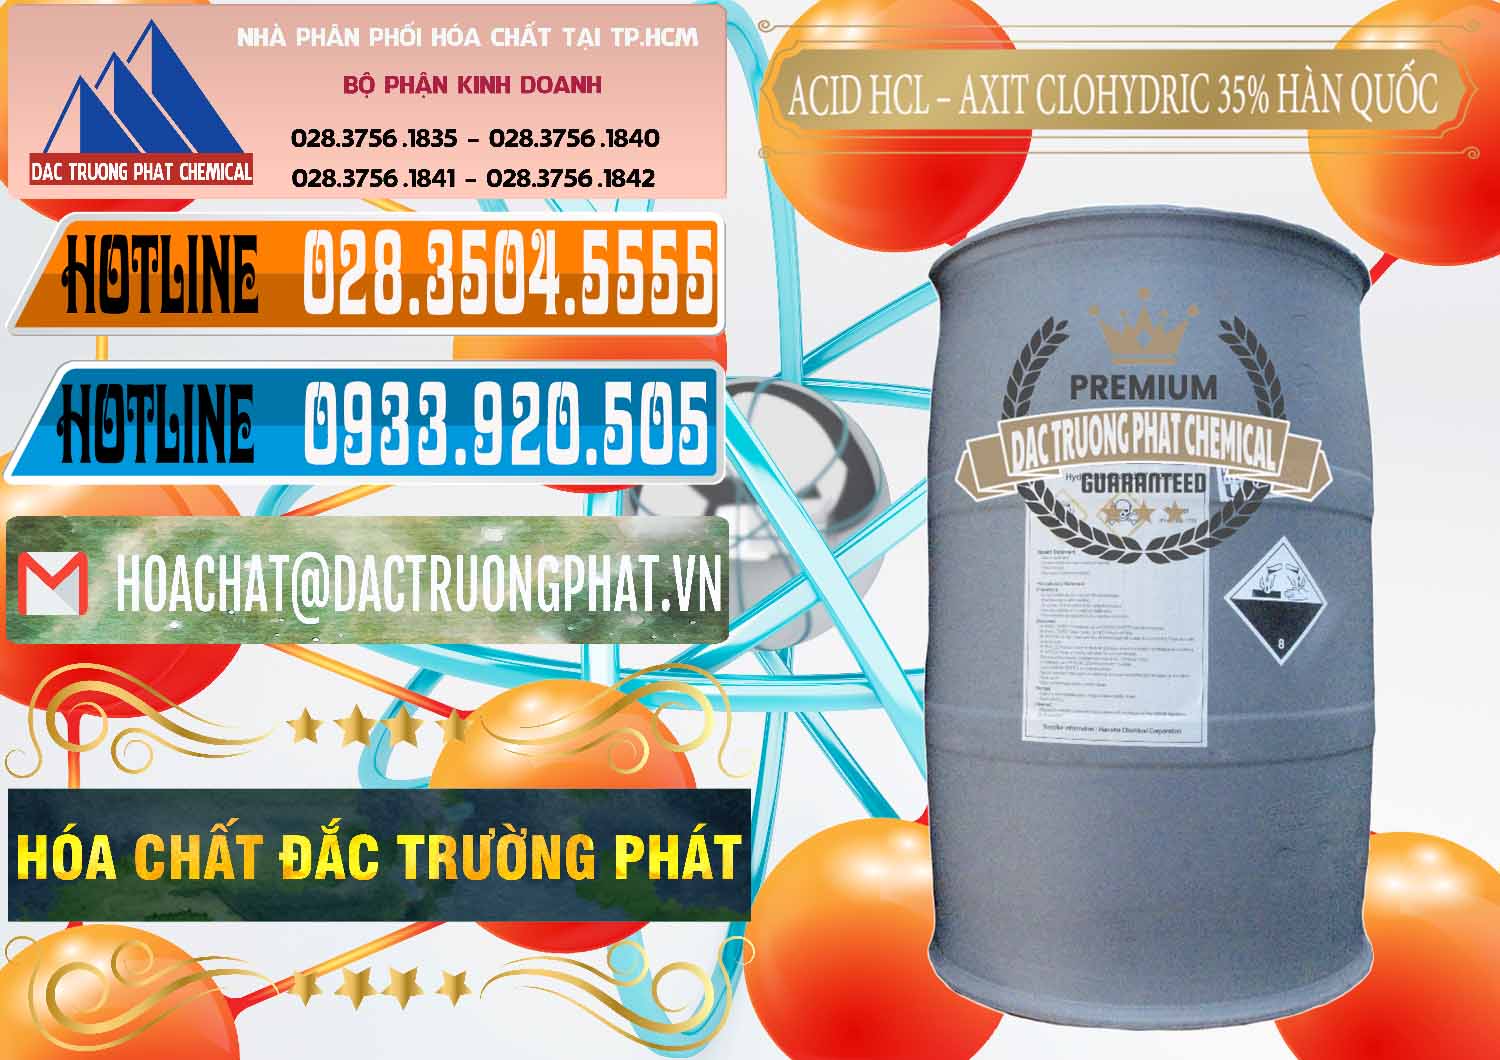 Công ty bán _ phân phối Acid HCL - Axit Cohidric 35% Hàn Quốc Korea - 0011 - Nơi cung ứng _ phân phối hóa chất tại TP.HCM - stmp.net